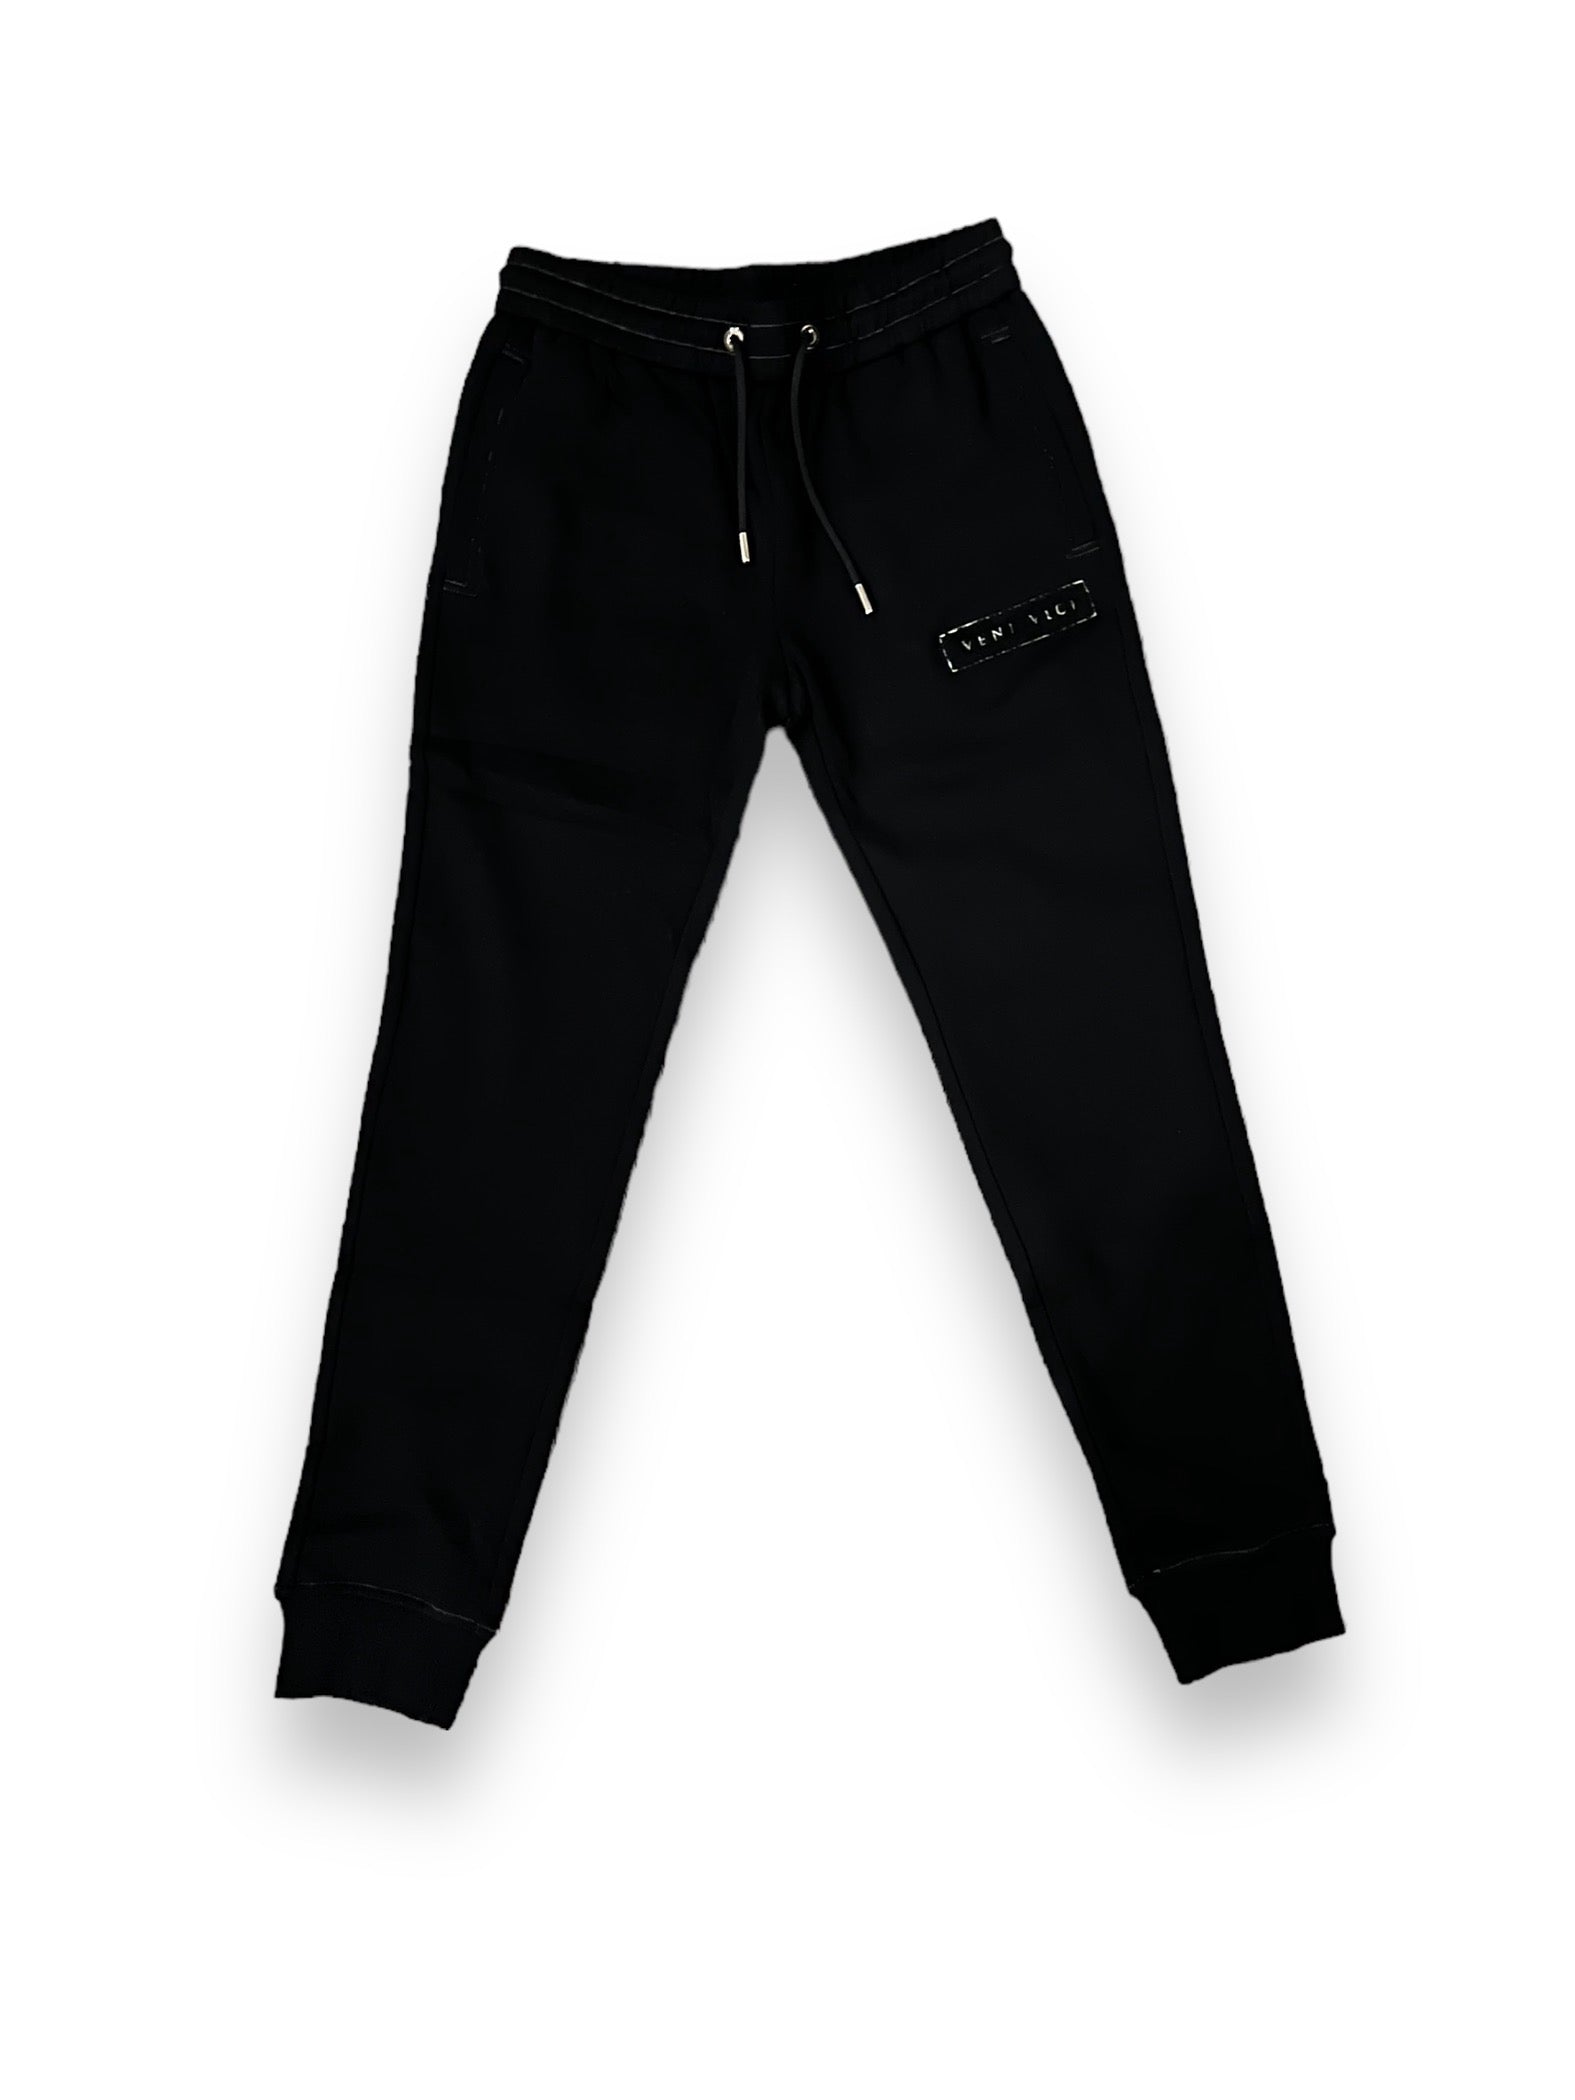 Black Chenille Sweat Suit Pants